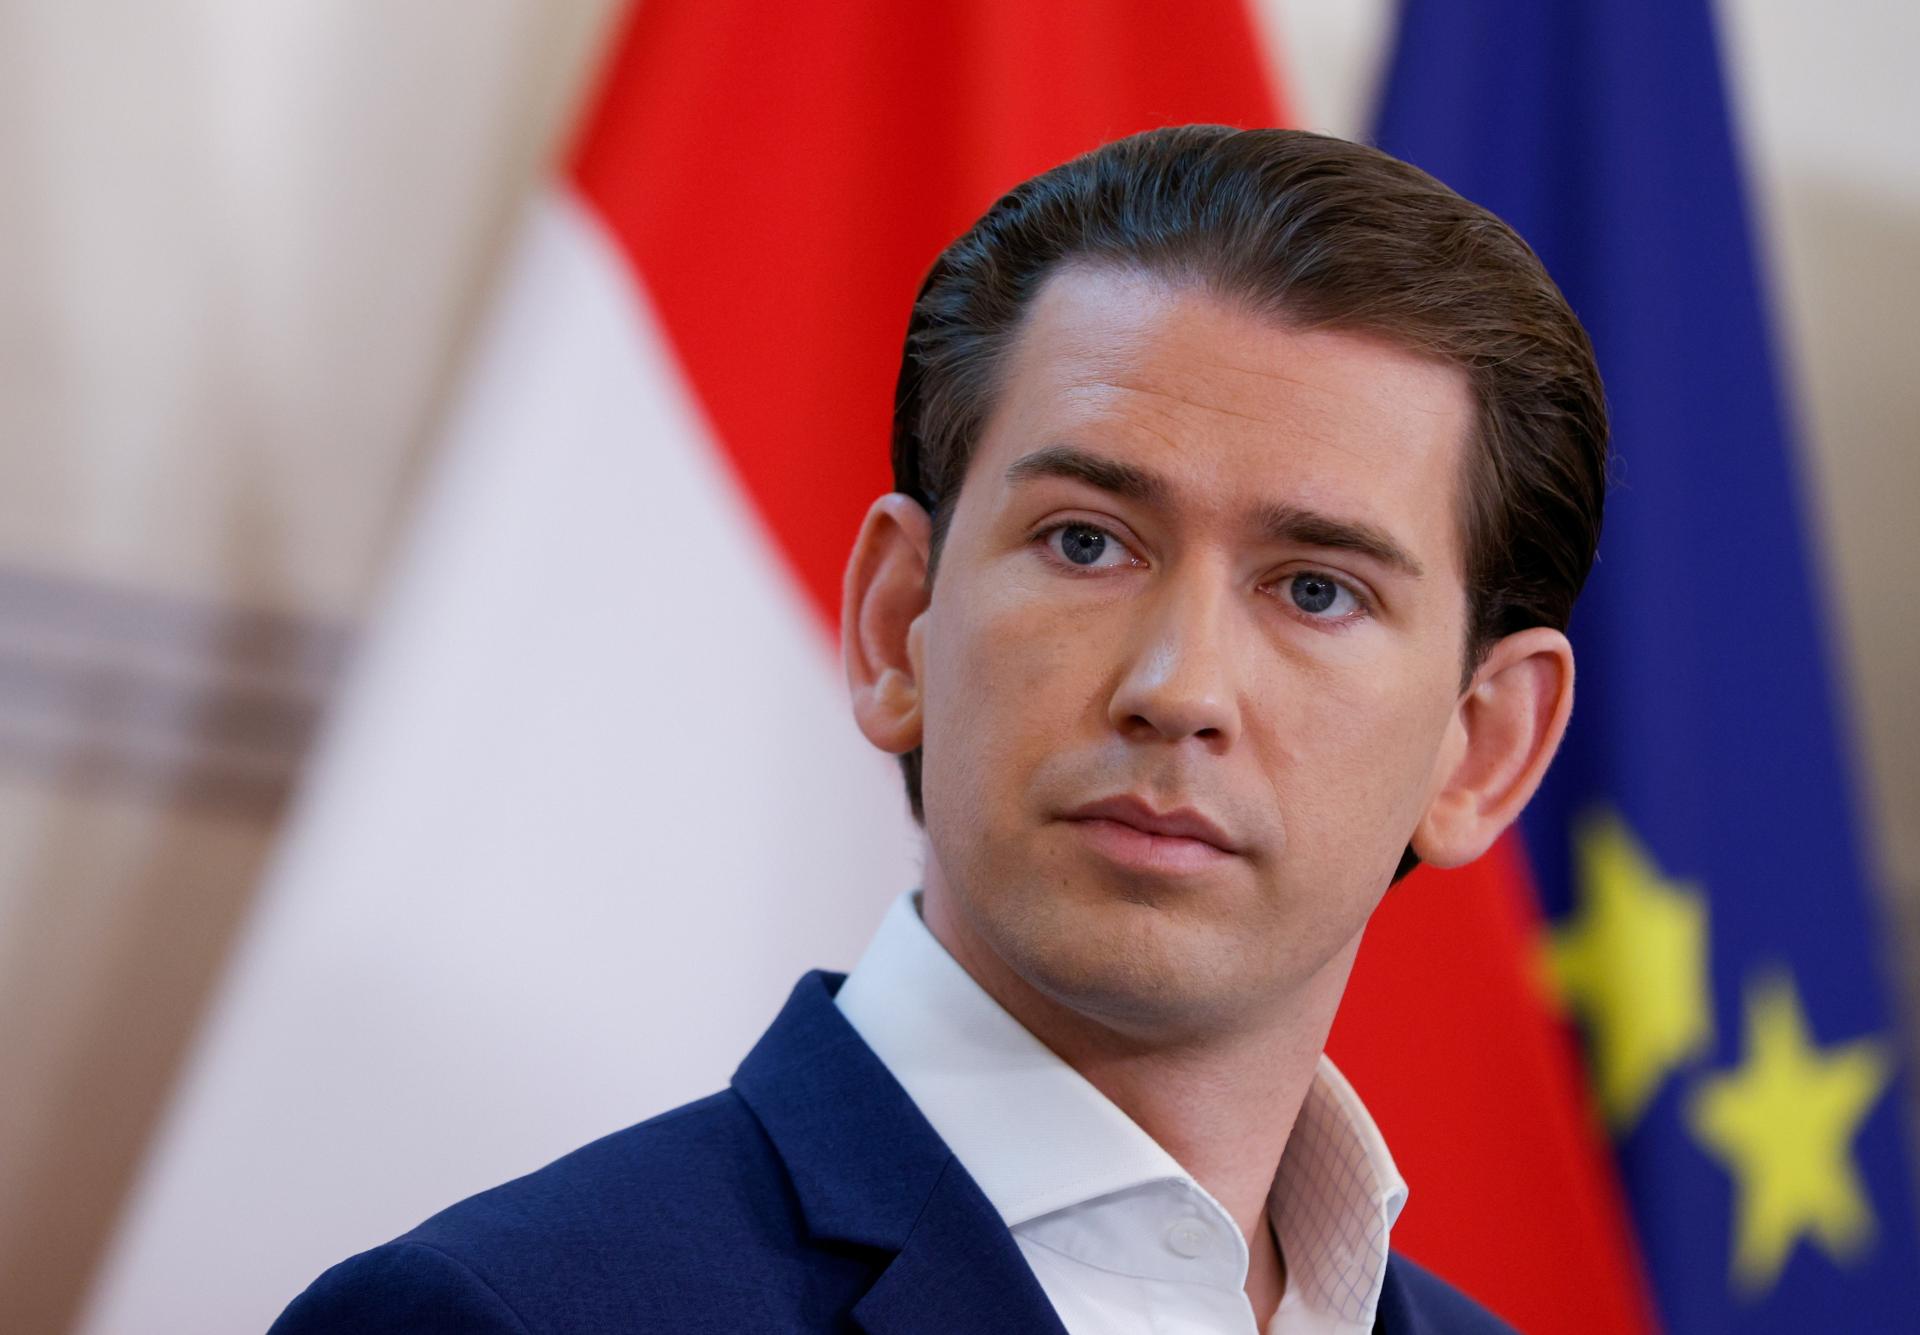 Rakúsky exkancelár Kurz odmieta nové obvinenia z korupcie. Ide o fikciu, tvrdí